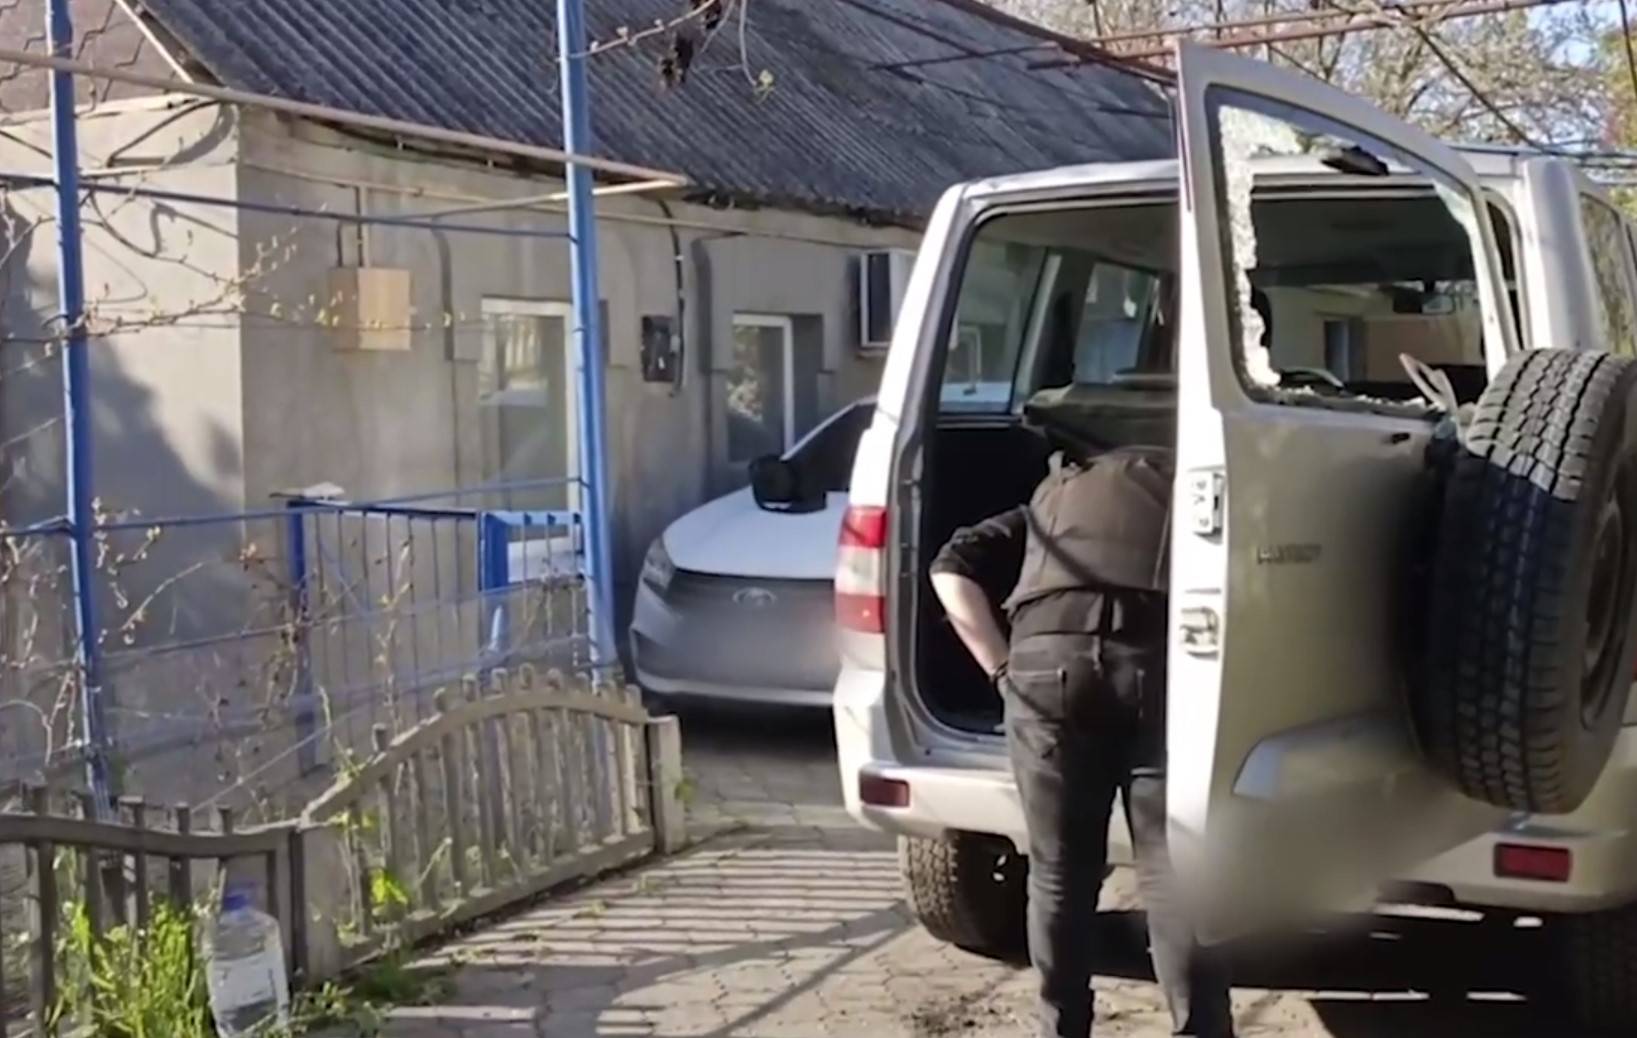 СК РФ возбудил уголовное дело из-за покушения на замначальника МВД Запорожской области